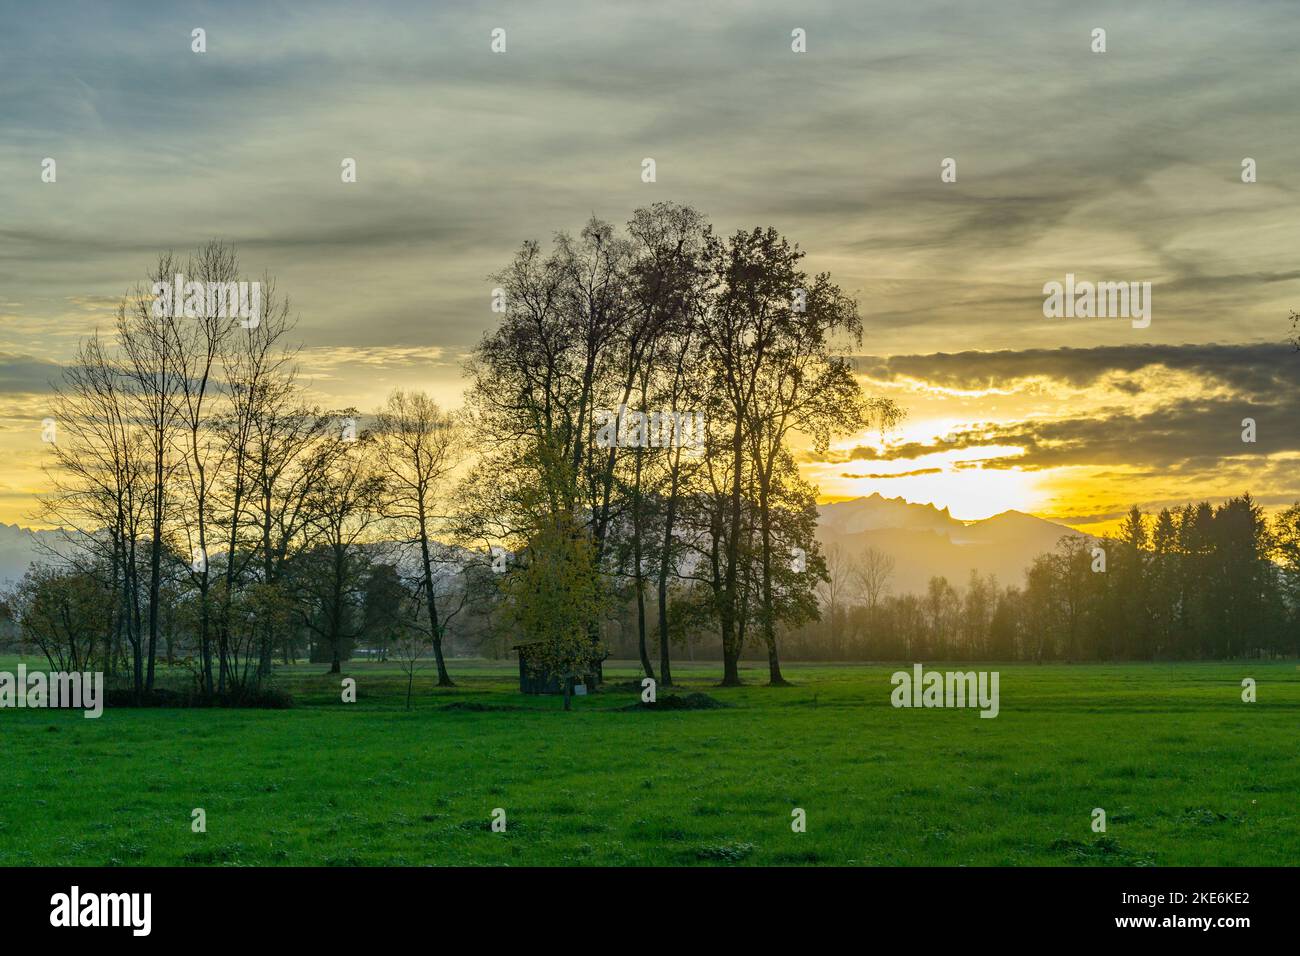 Sonnenuntergang im Rheintal, mit Wiesen und Felder, Bäumen und Schweizer Bergen im Hintergrund. Föhn mit Wolken und blau, gelb, naranja, roter Himmel Foto de stock